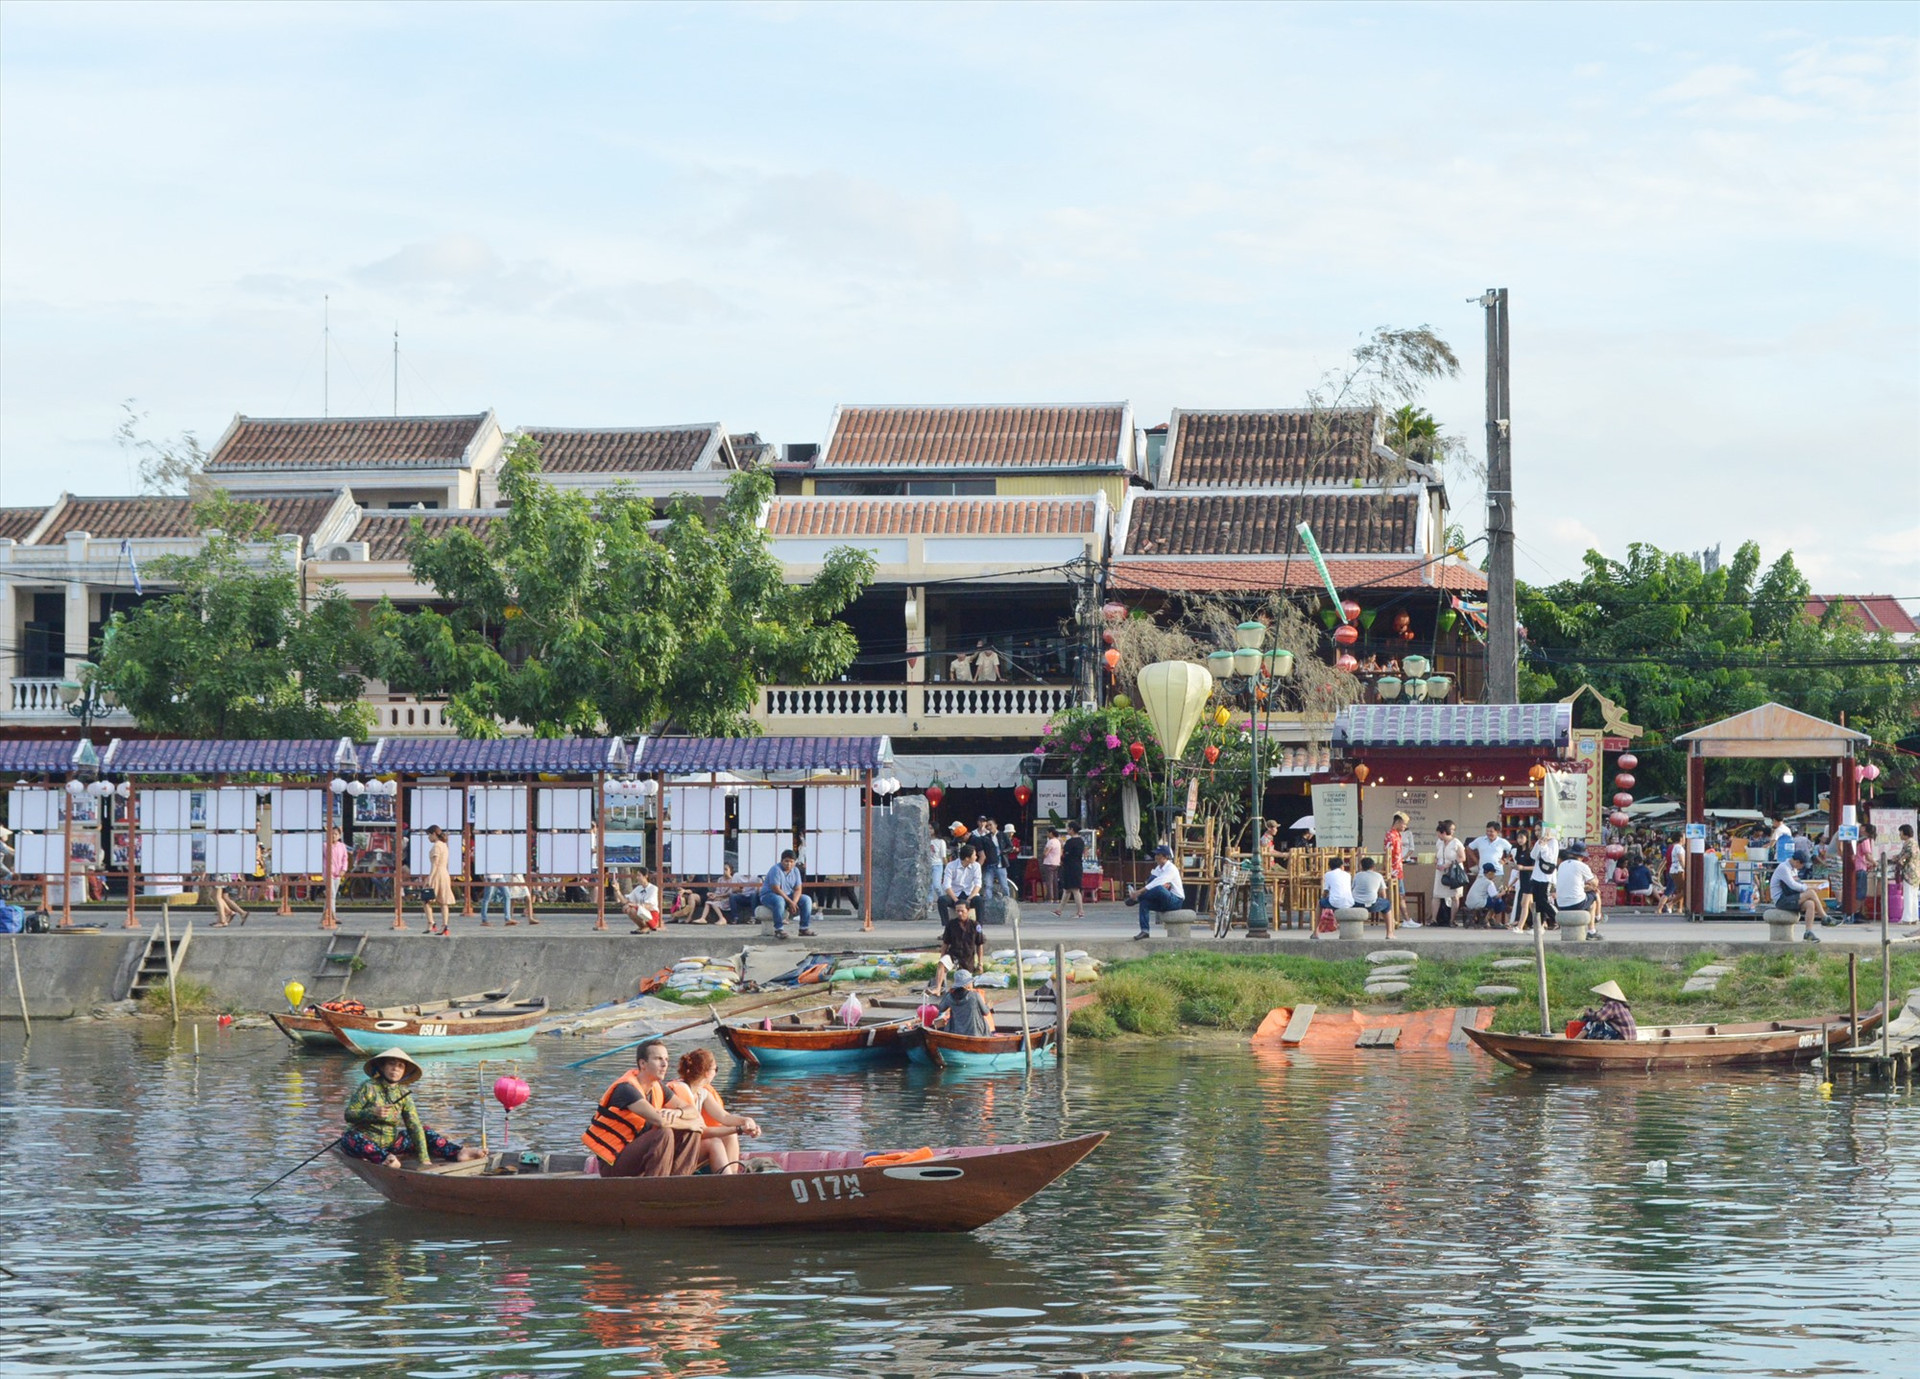 Du lịch Quảng Nam đã xác định vị trí trên bản đồ du lịch Việt Nam. Ành: V.LỘC